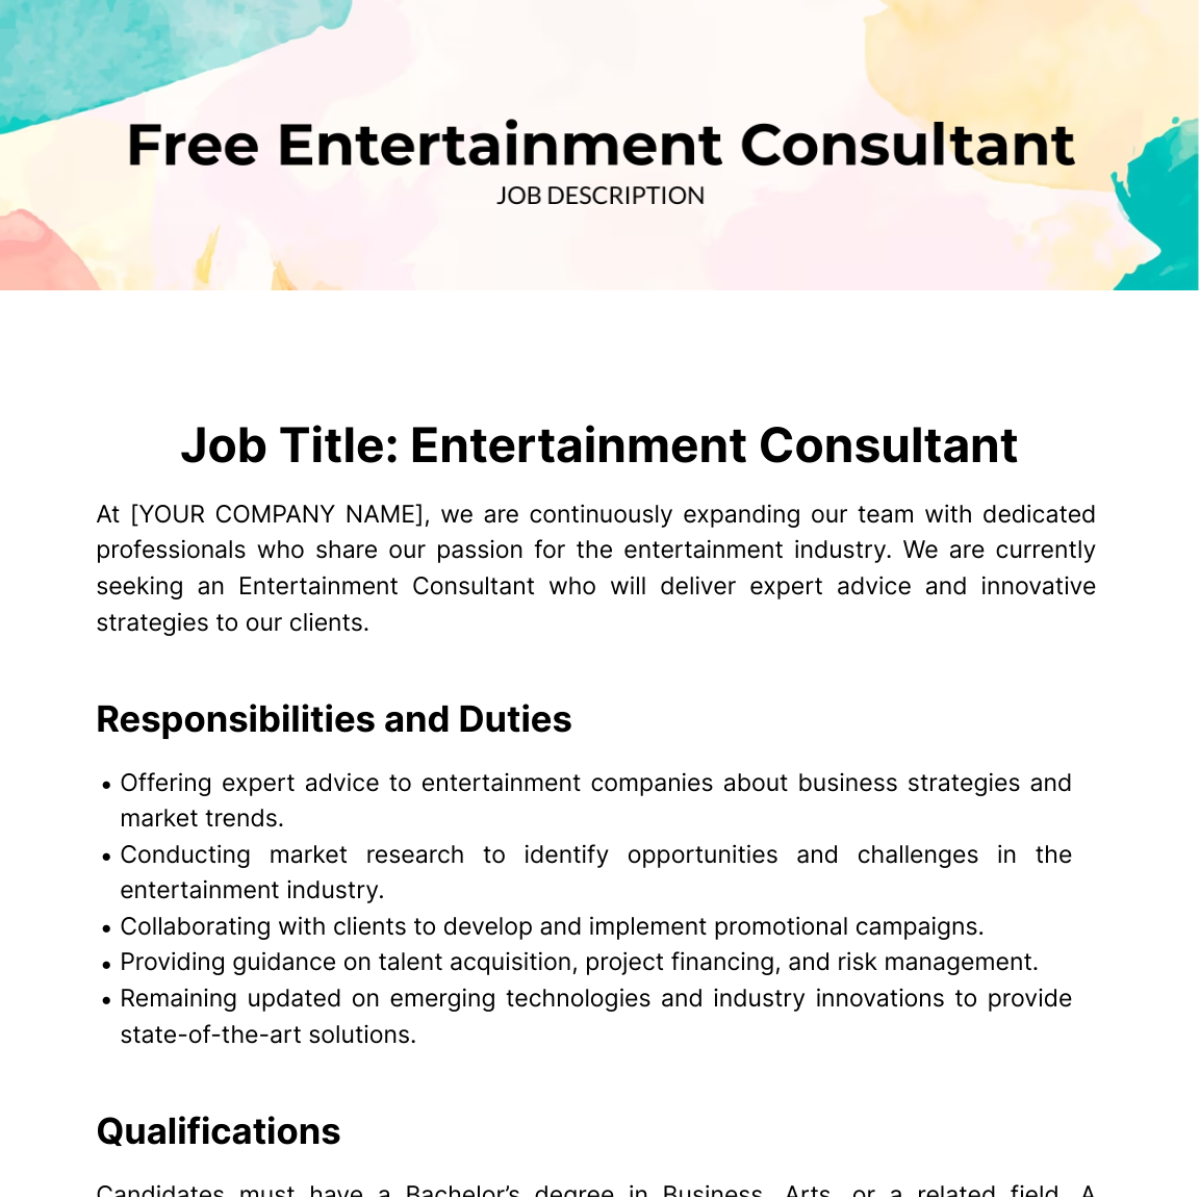 Free Entertainment Consultant Job Description Template